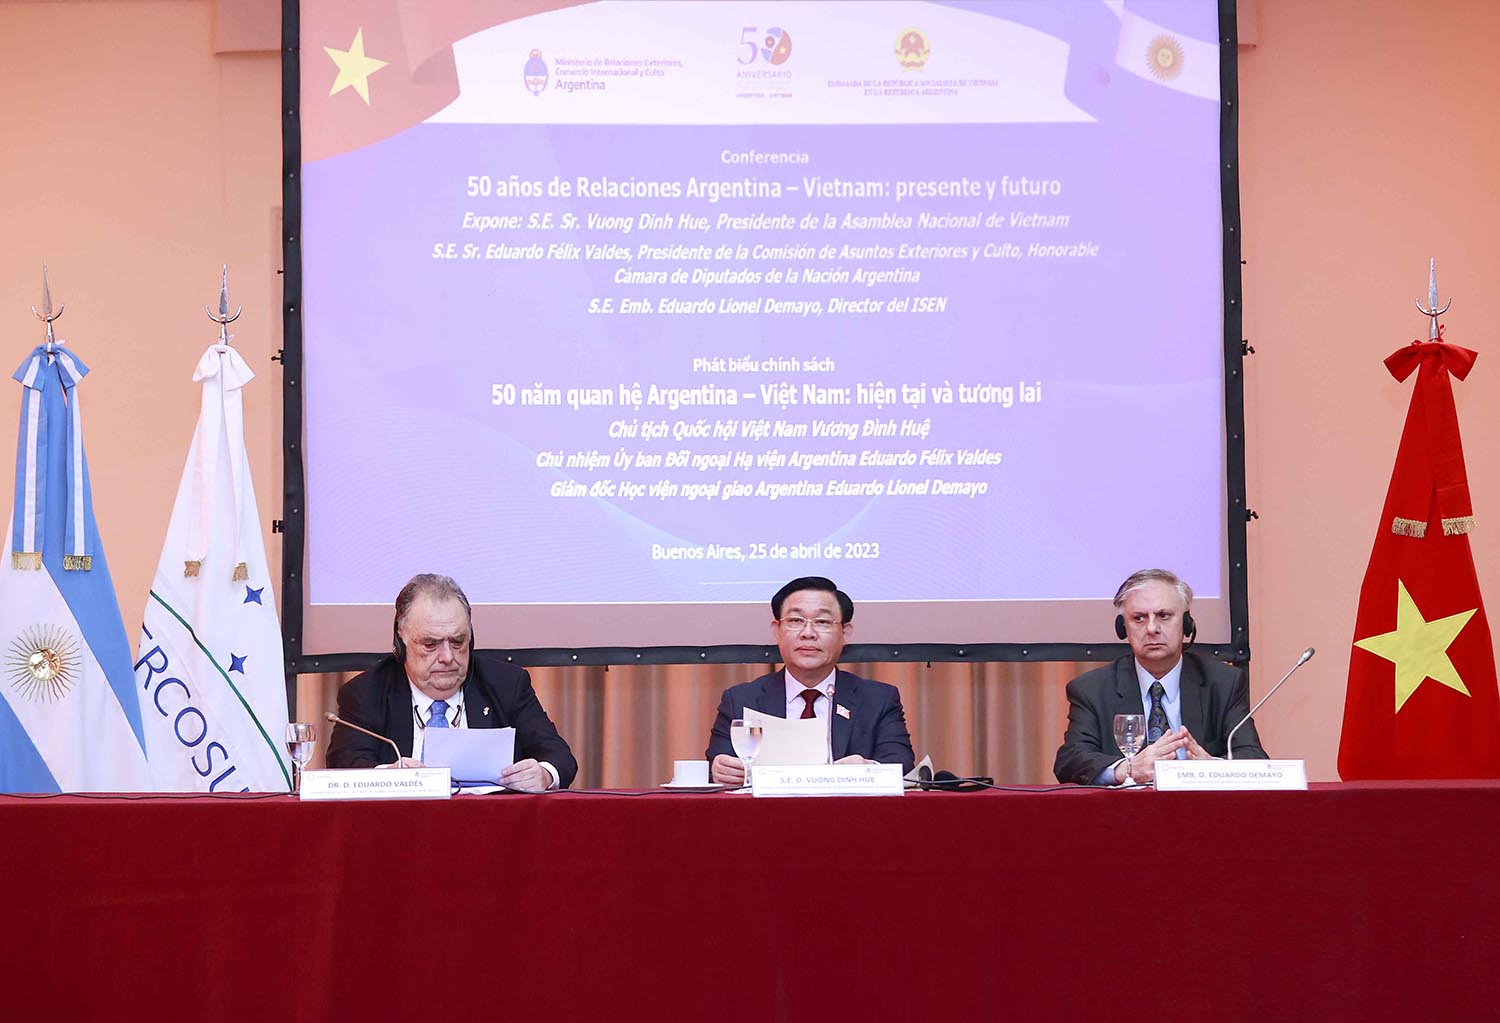 Chủ tịch Quốc hội Vương Đình Huệ phát biểu tại sự kiện kỷ niệm “50 năm quan hệ Việt Nam - Argentina: Hiện tại và tương lai”. Ảnh: VPQH